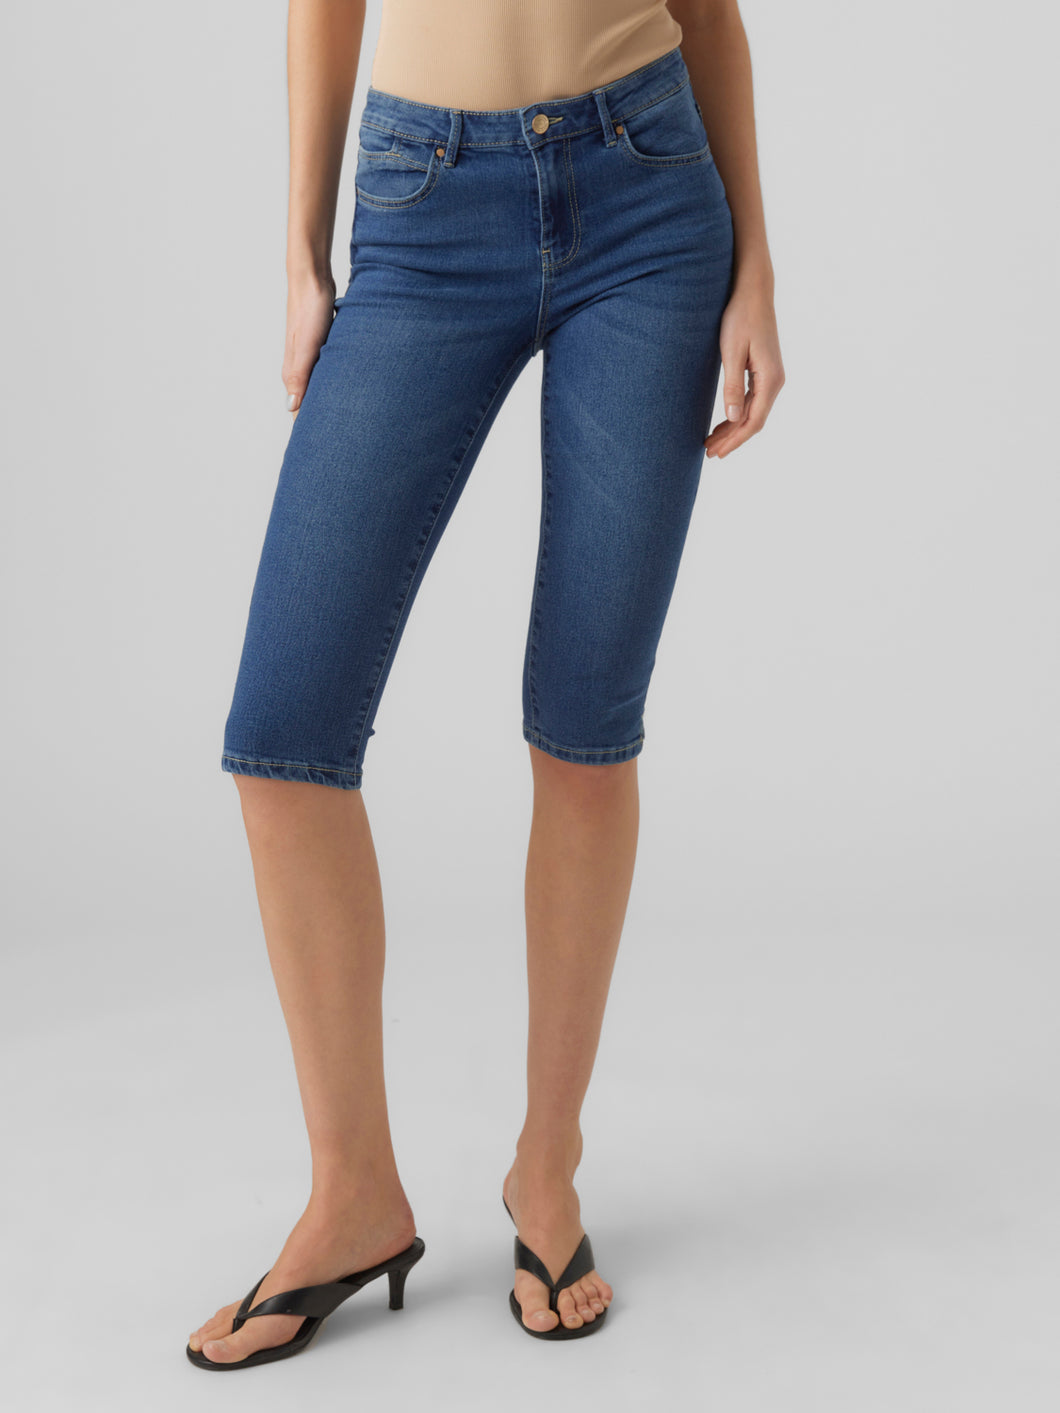 VMJUNE Jeans - Medium Blue Denim